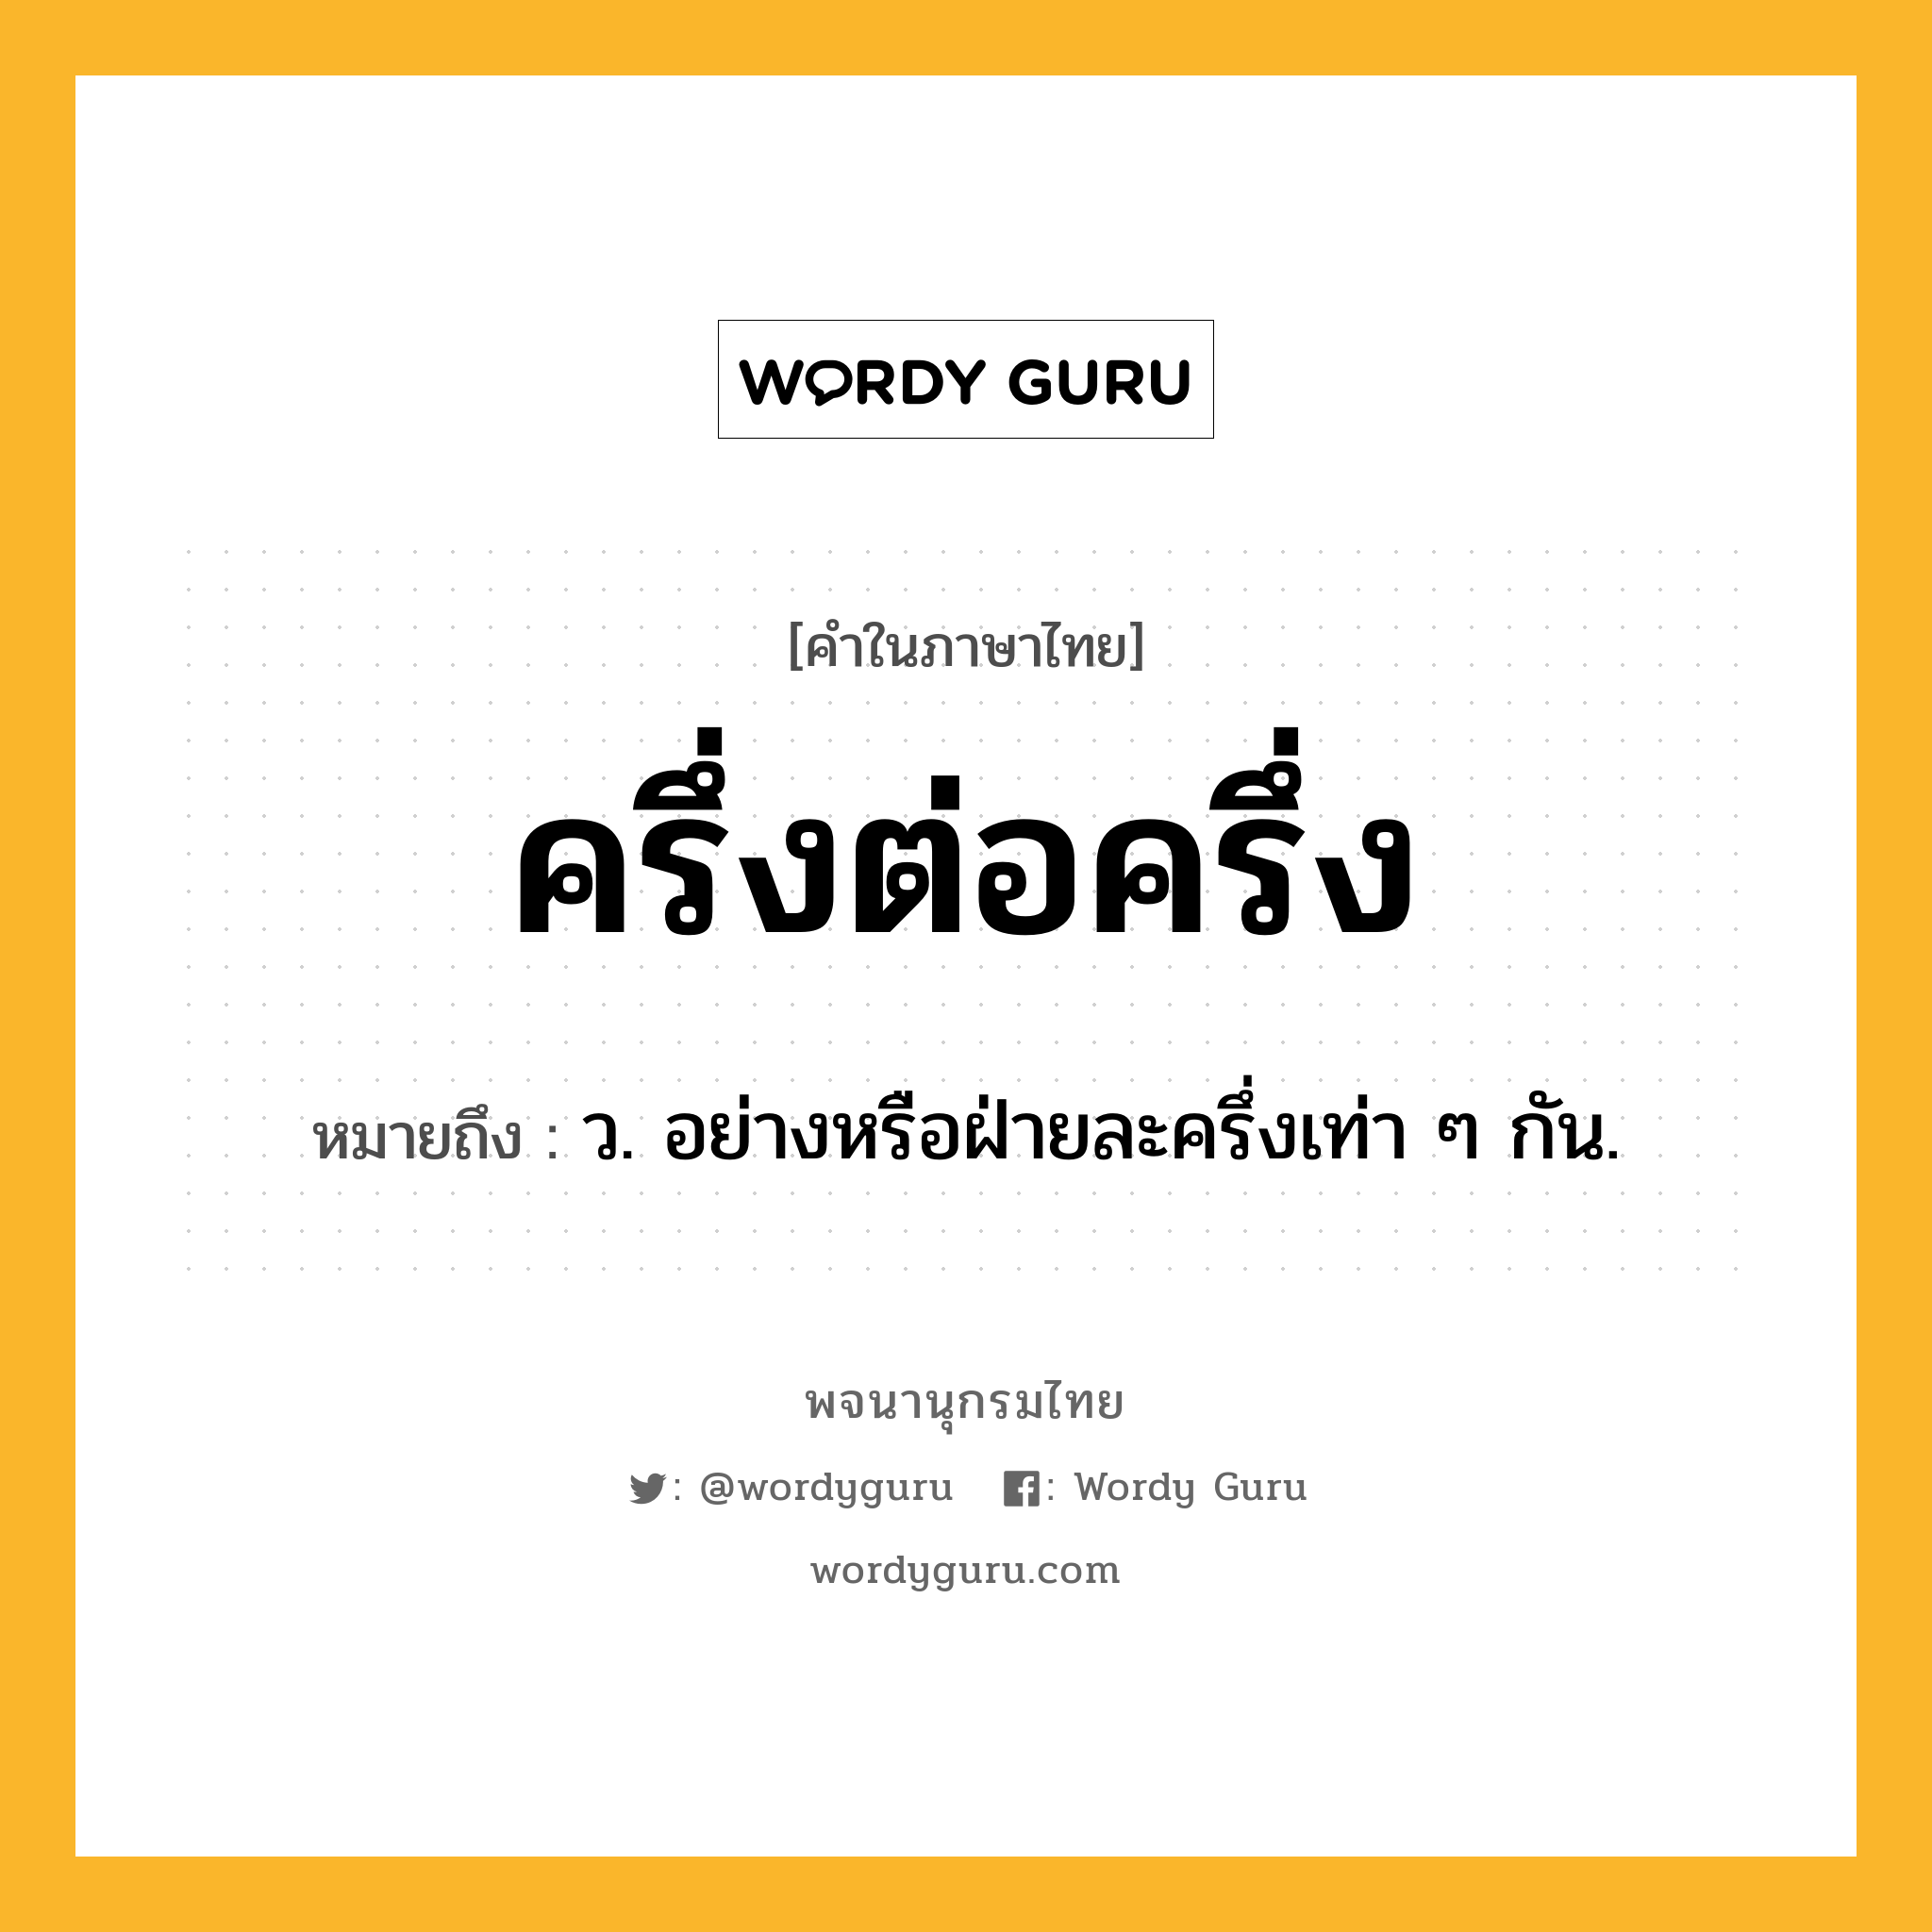 ครึ่งต่อครึ่ง หมายถึงอะไร?, คำในภาษาไทย ครึ่งต่อครึ่ง หมายถึง ว. อย่างหรือฝ่ายละครึ่งเท่า ๆ กัน.